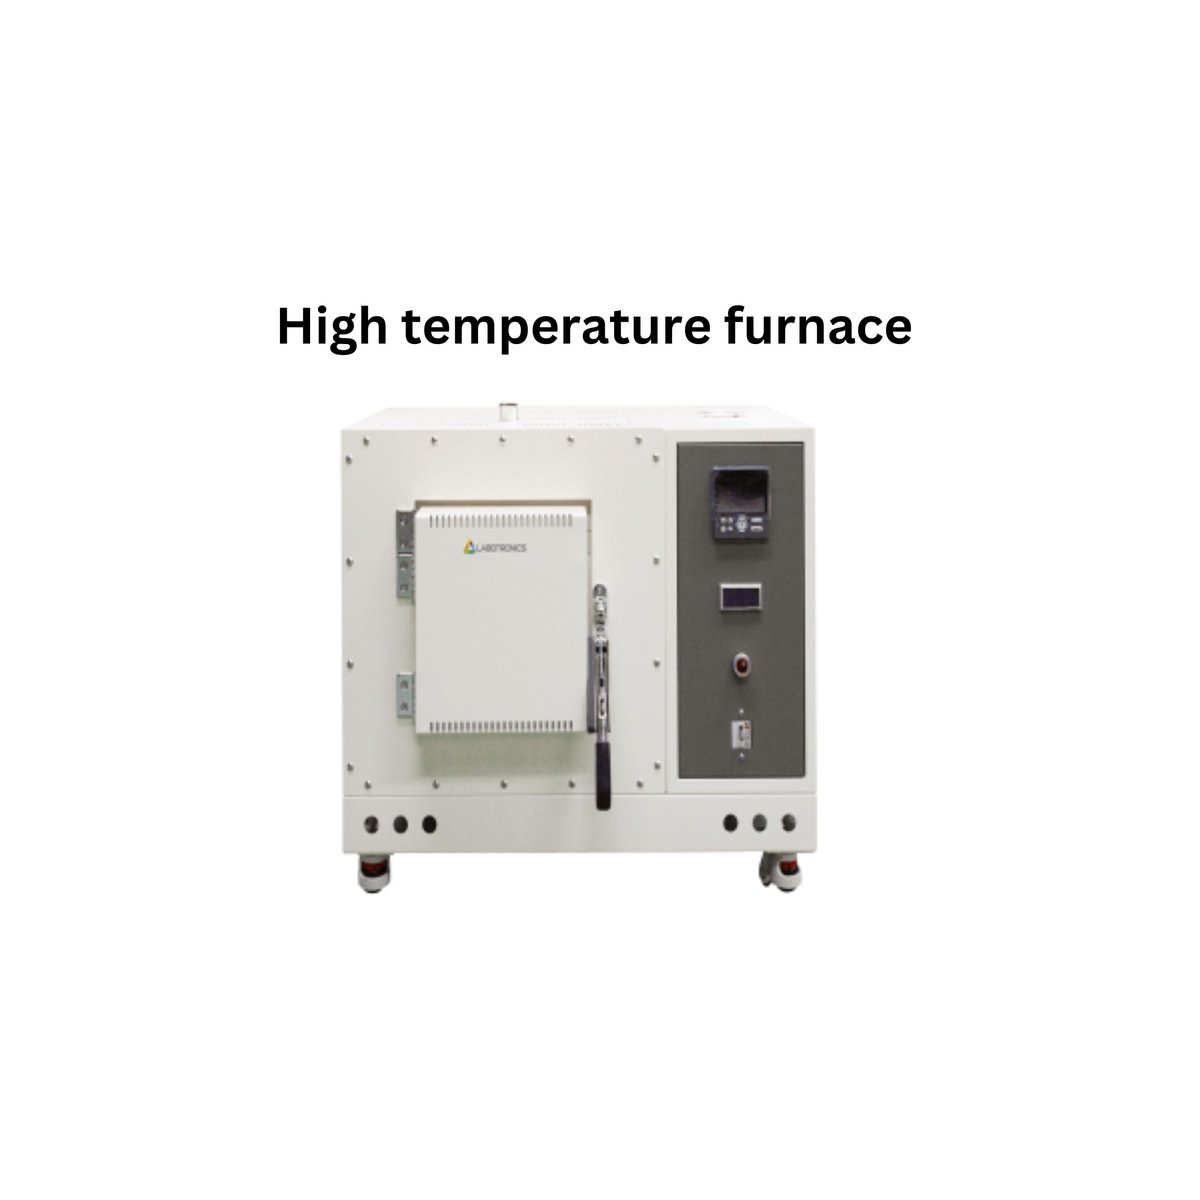 High temperature furnace .jpg